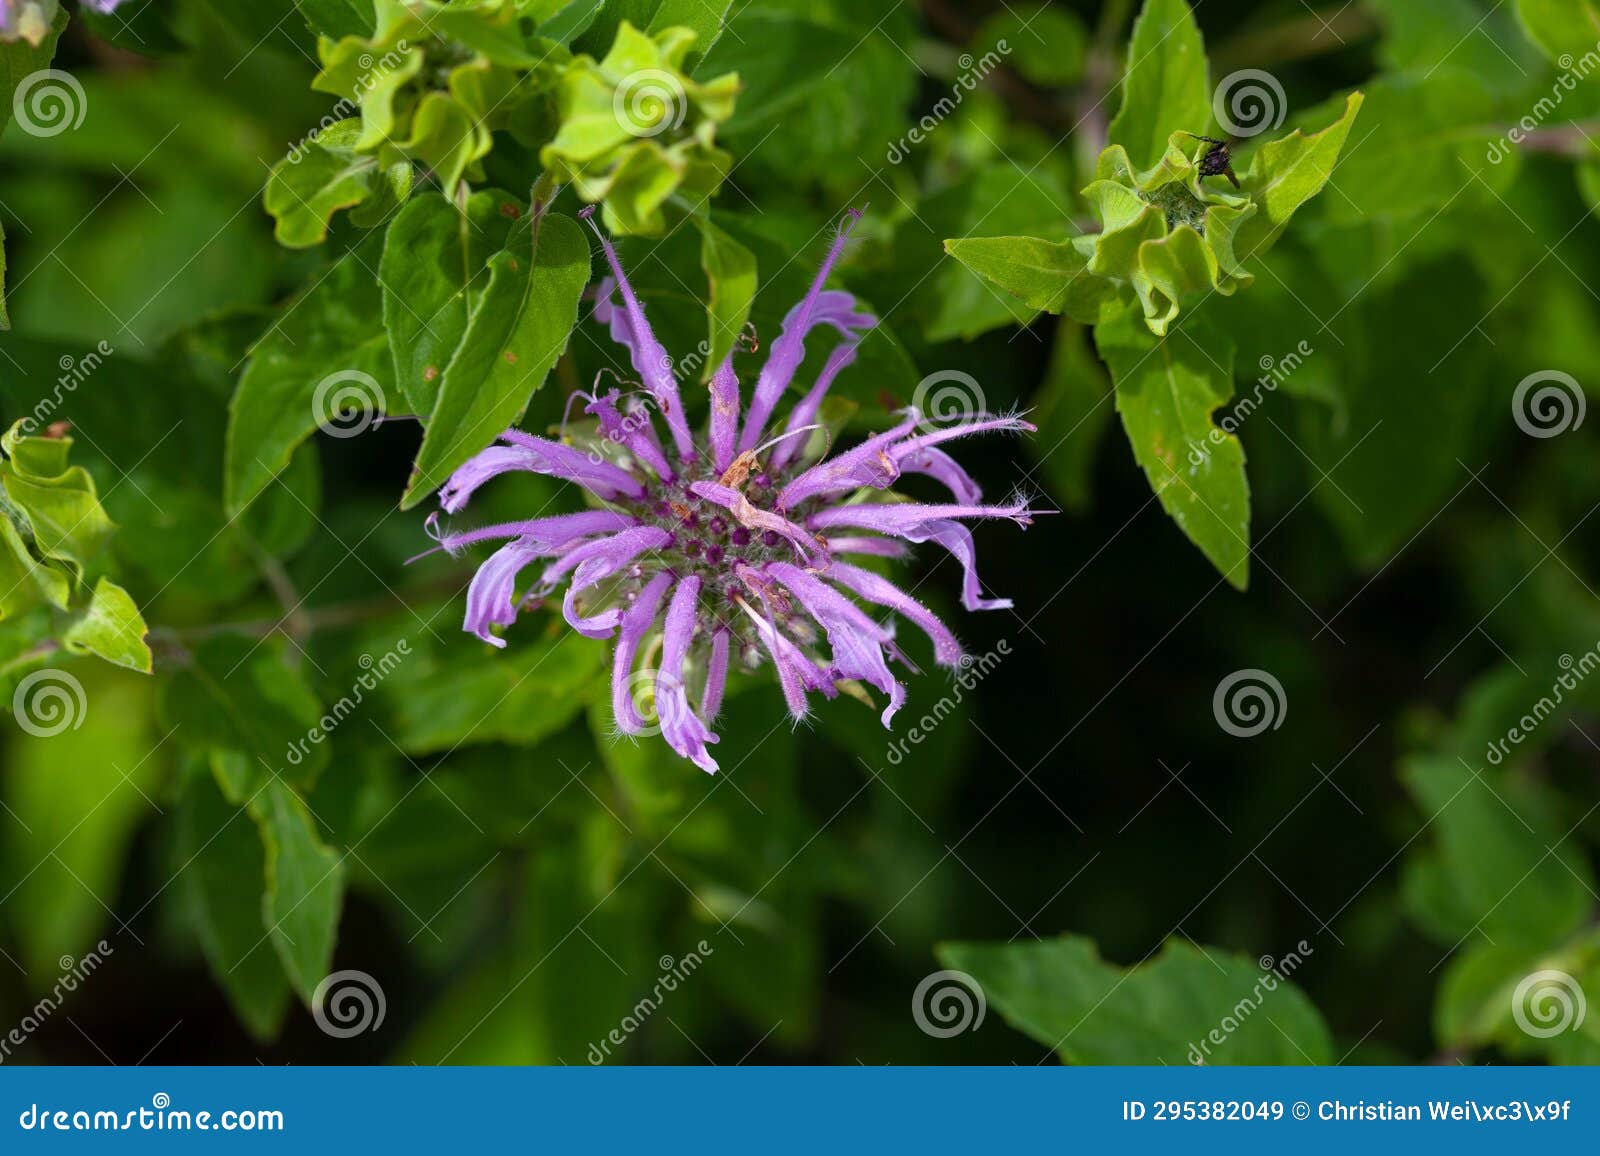 flower of a wild bergamot, monarda fistulosa